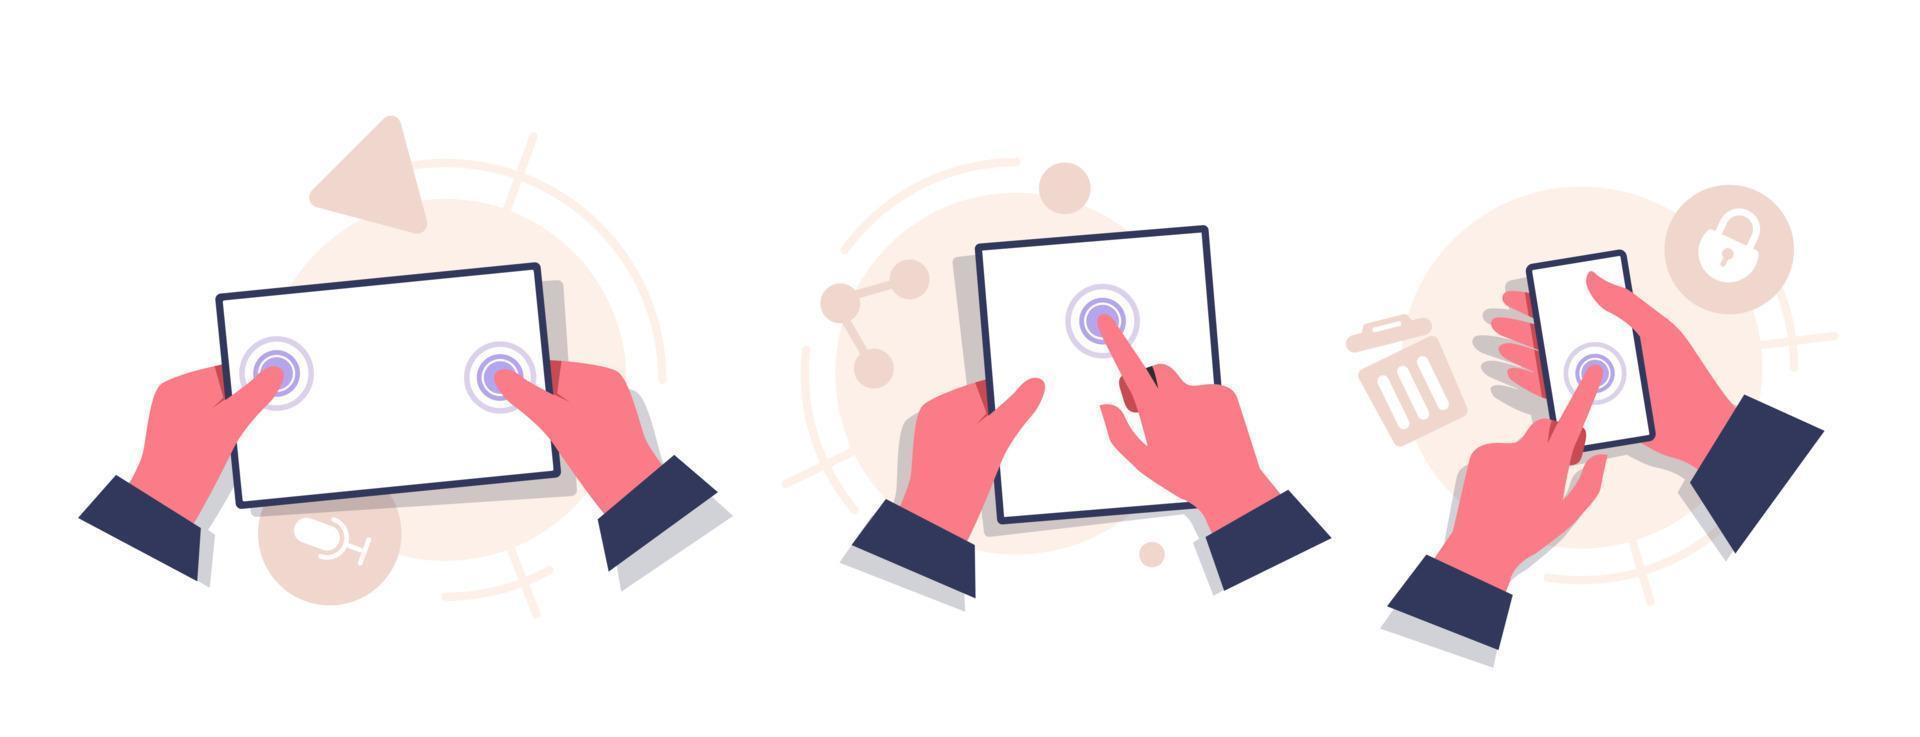 définir le concept de main tenant une tablette numérique avec écran blanc, illustration vectorielle d'icône de conception plate vecteur